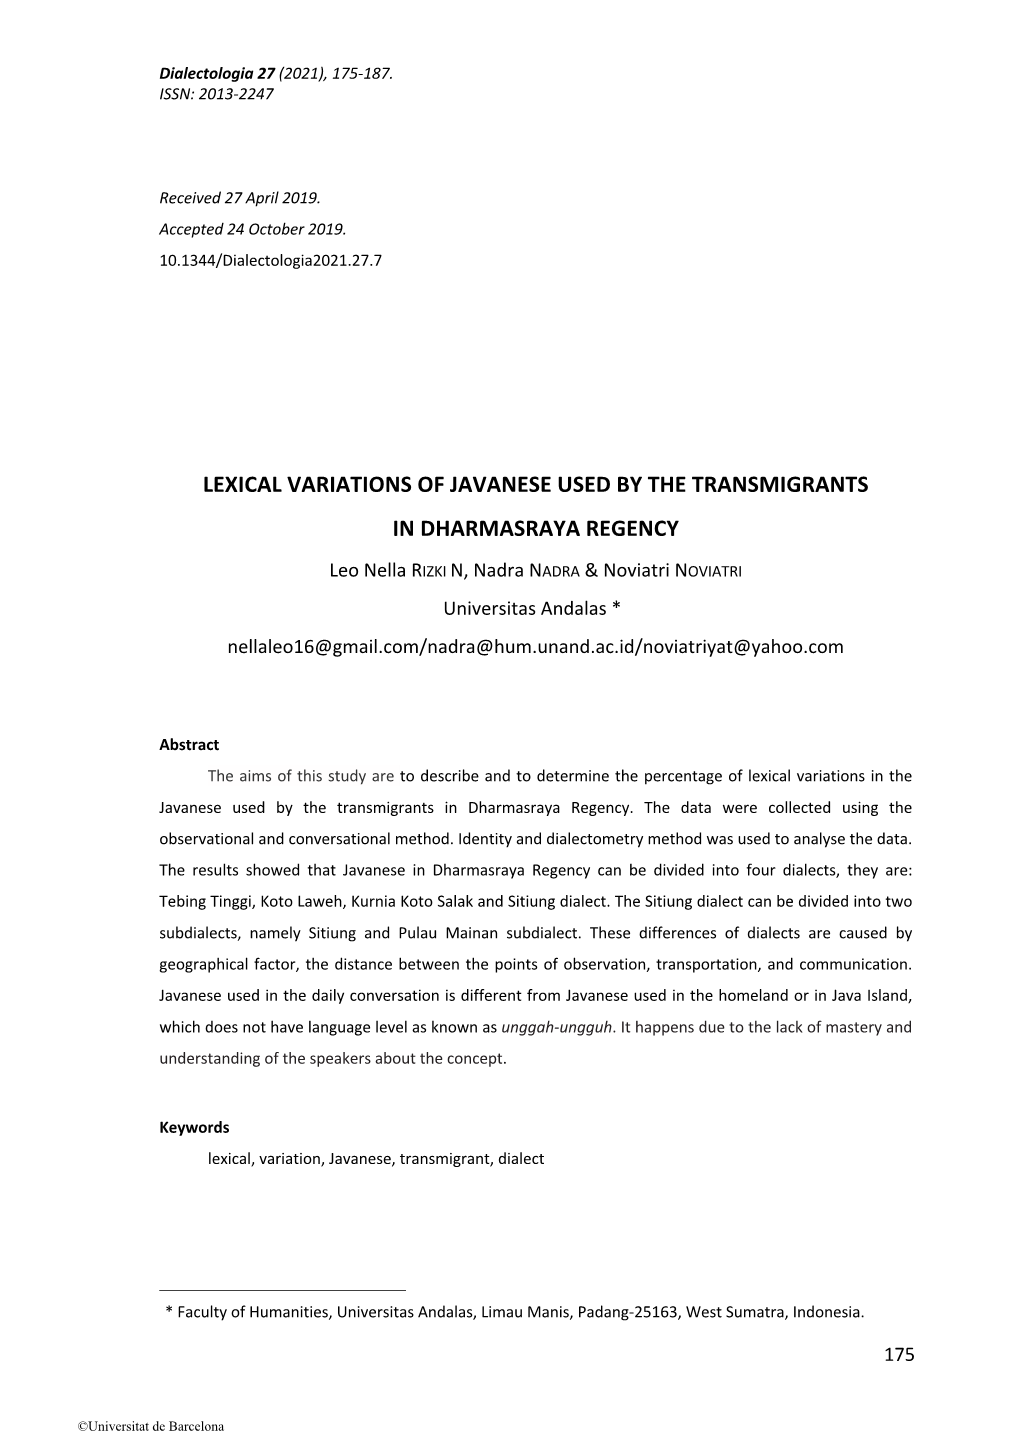 Lexical Variations of Javanese Used by the Transmigrants in Dharmasraya Regency